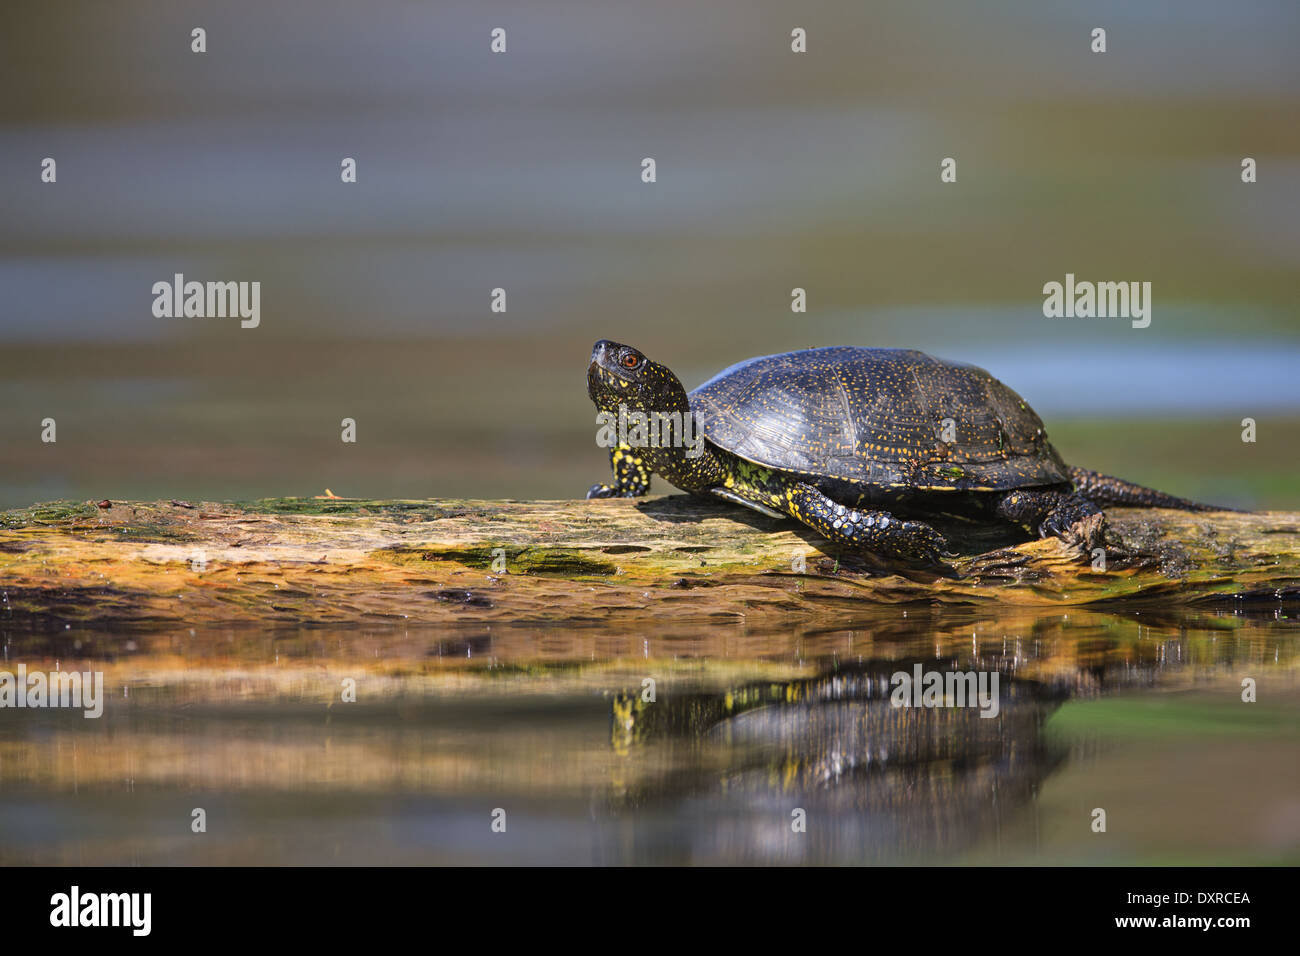 European pond turtle (Emys orbicularis) Stock Photo